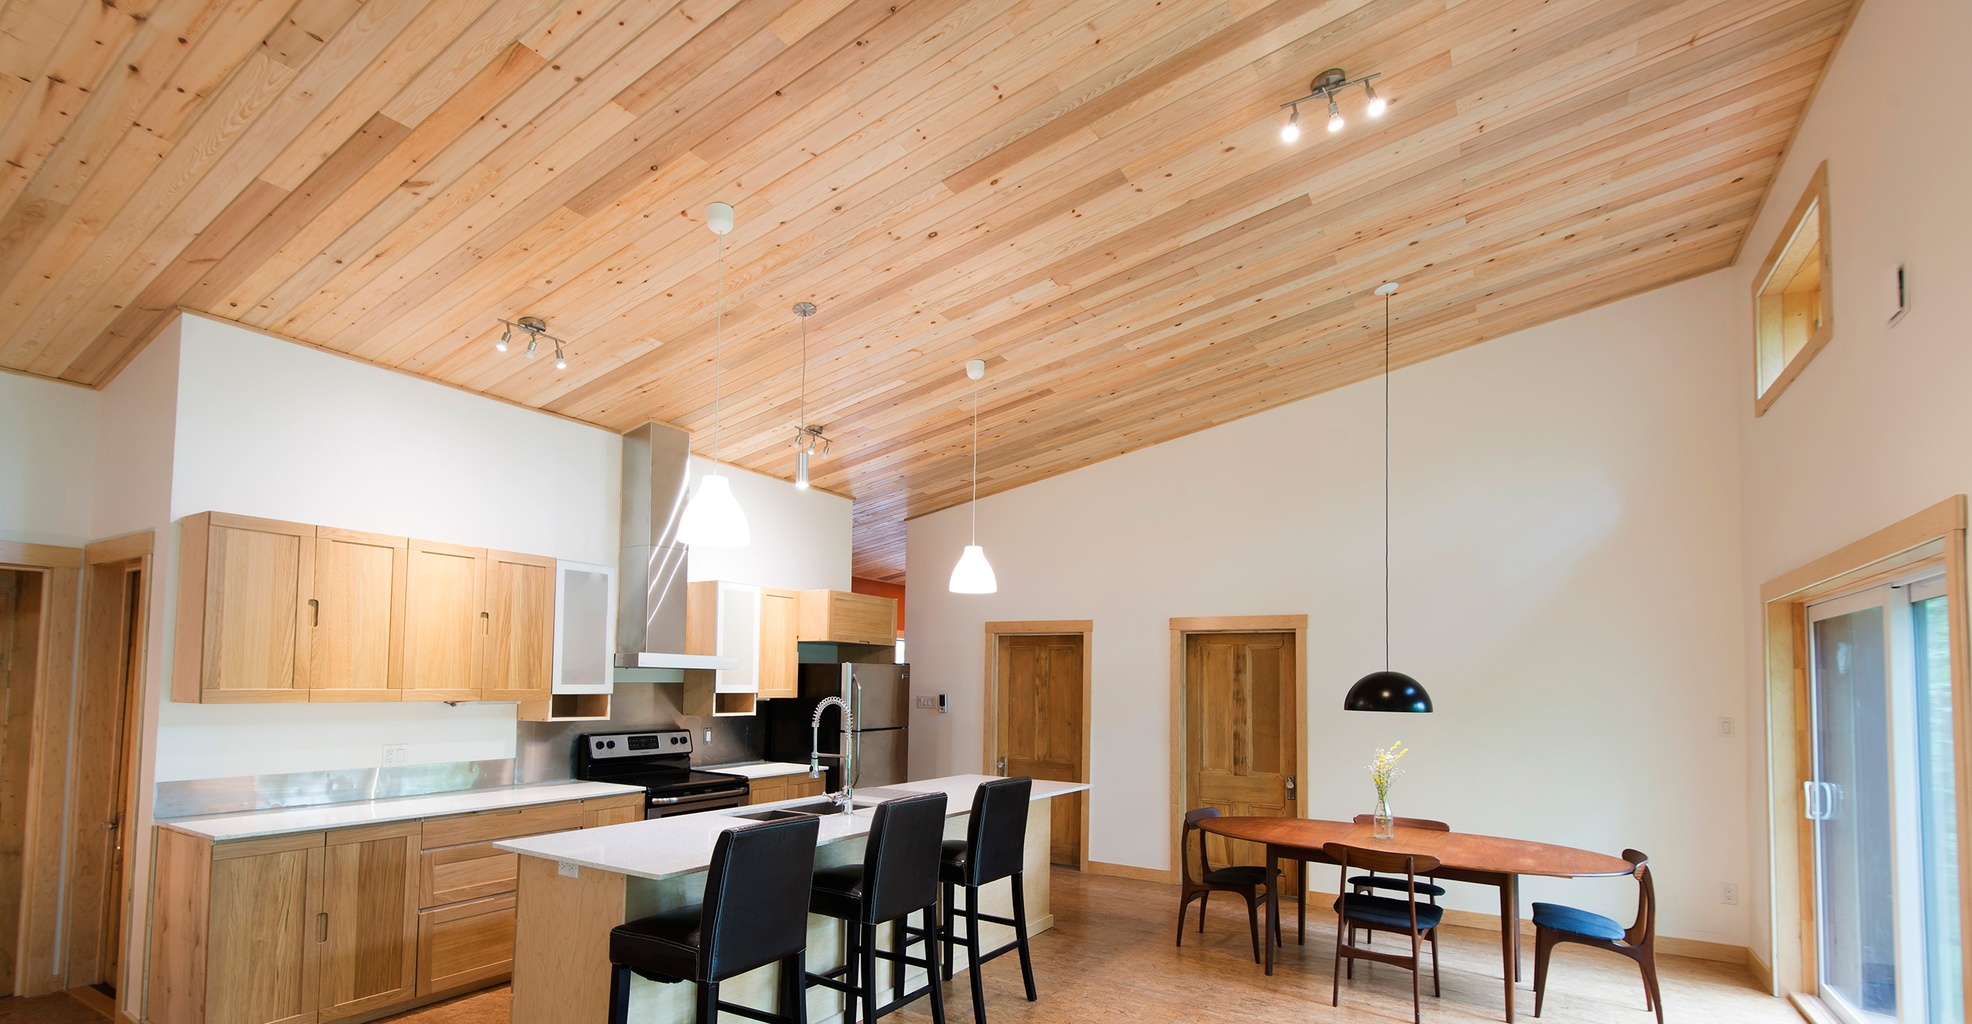 Plafonds: choisir entre une finition de gypse et de bois - Écohabitation